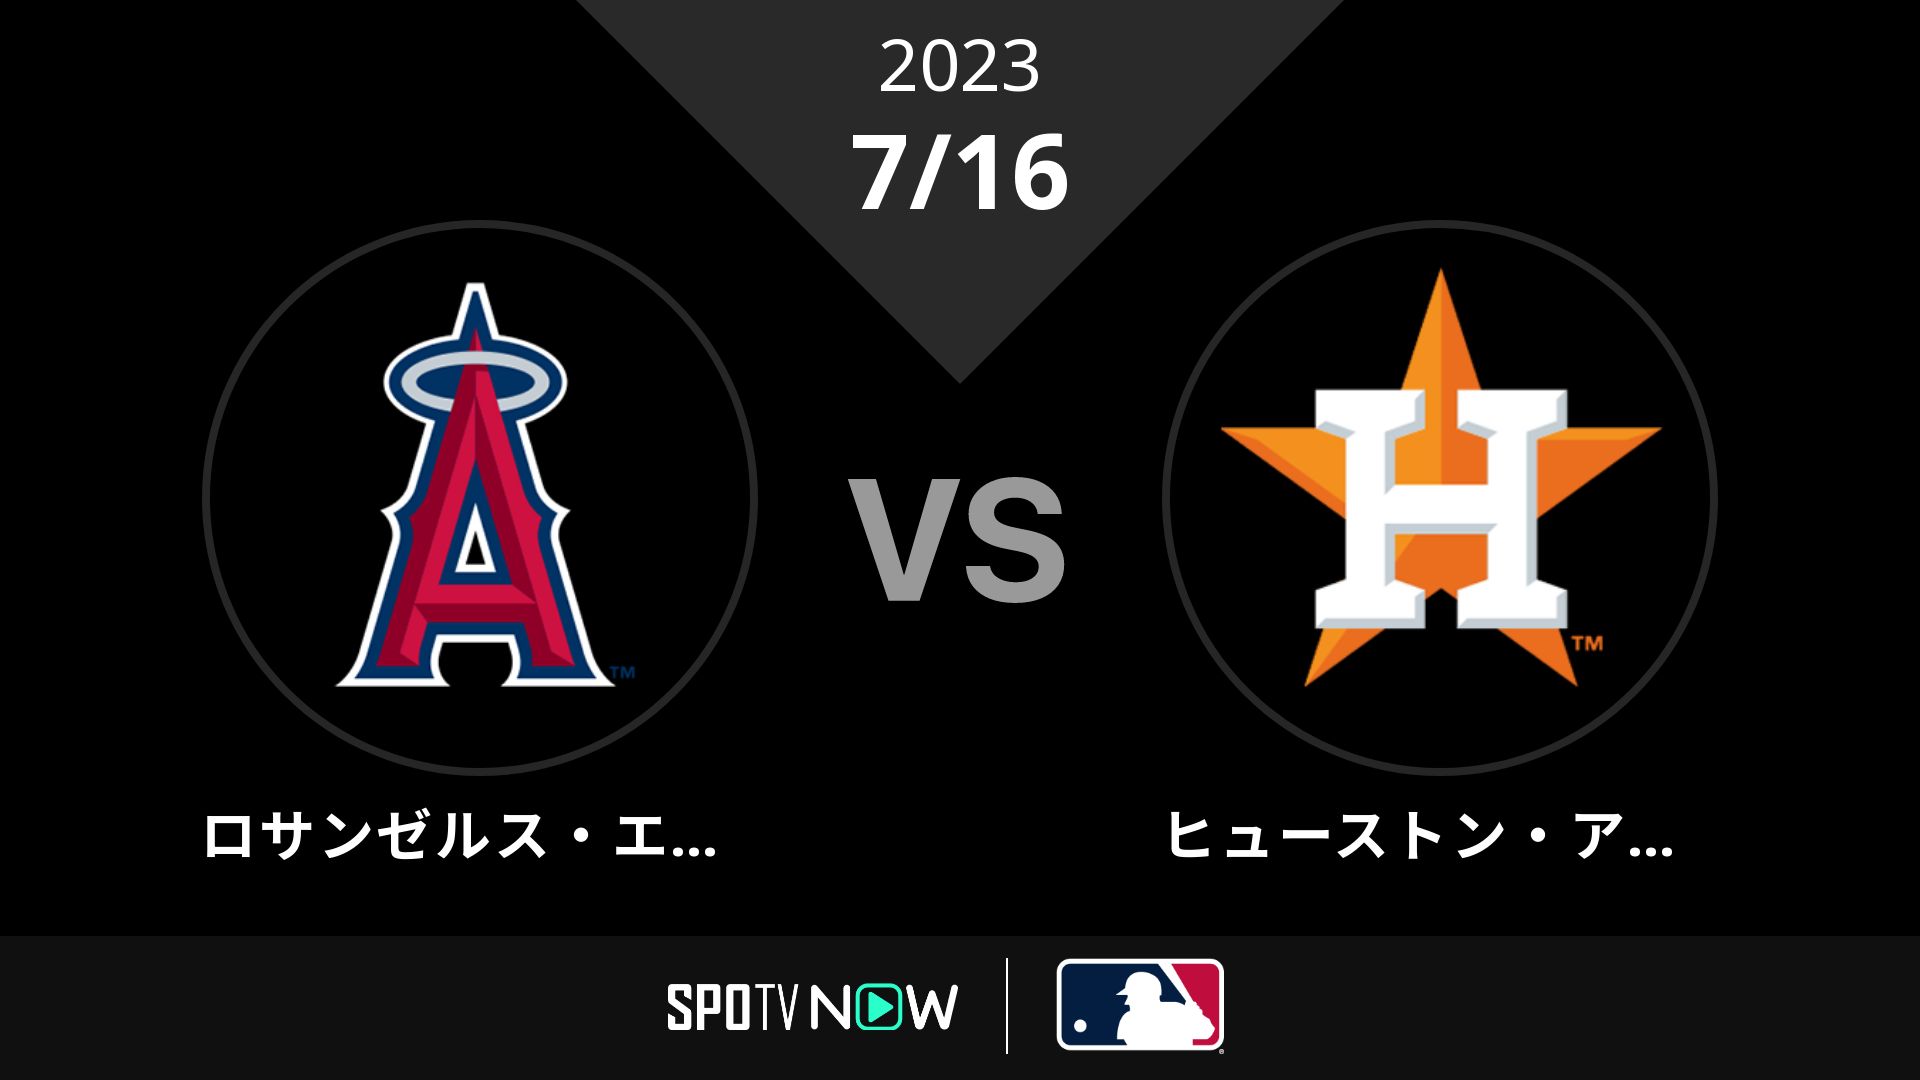 2023/7/16 エンゼルス vs アストロズ [MLB]